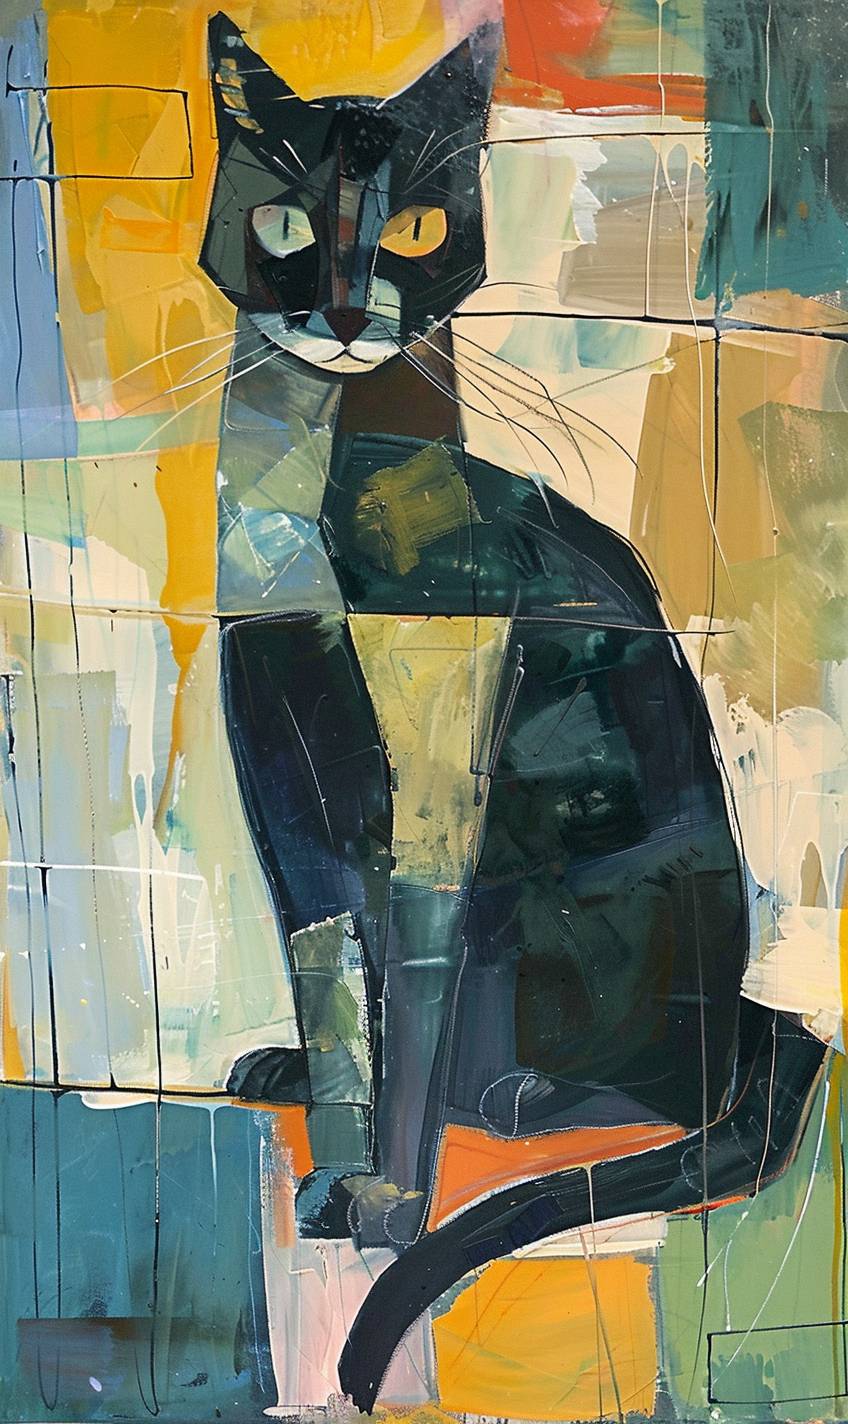 Feline animal painting in style of Richard Diebenkorn